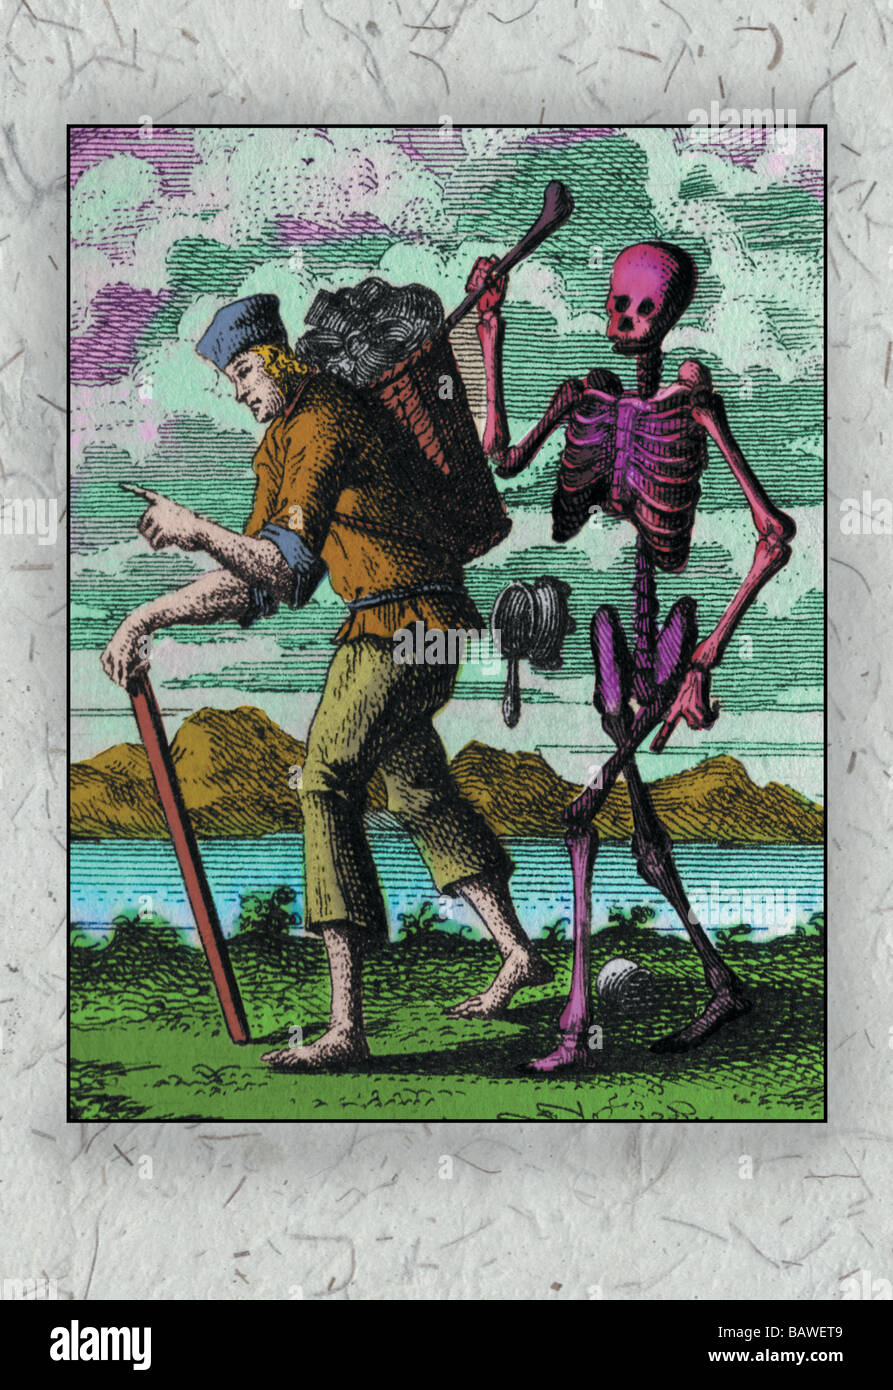 El esqueleto y los campesinos Foto de stock